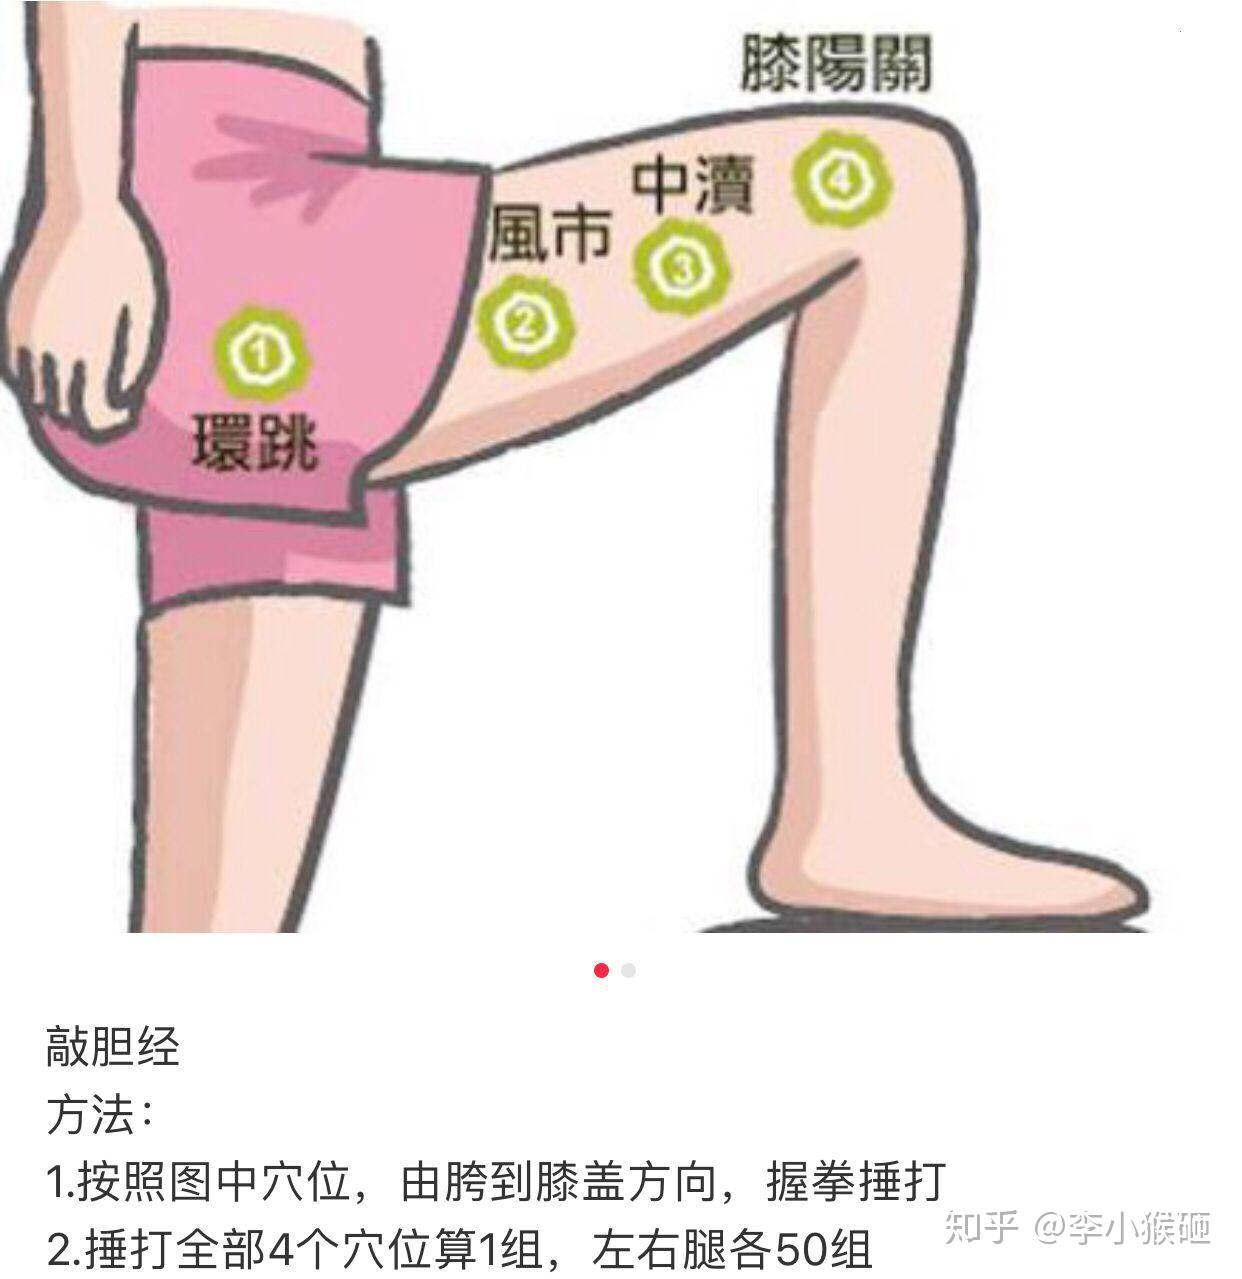 臀上皮神經:臀上皮神經表面解剖及其功能,與臀上皮神經相關的疾病,_中文百科全書